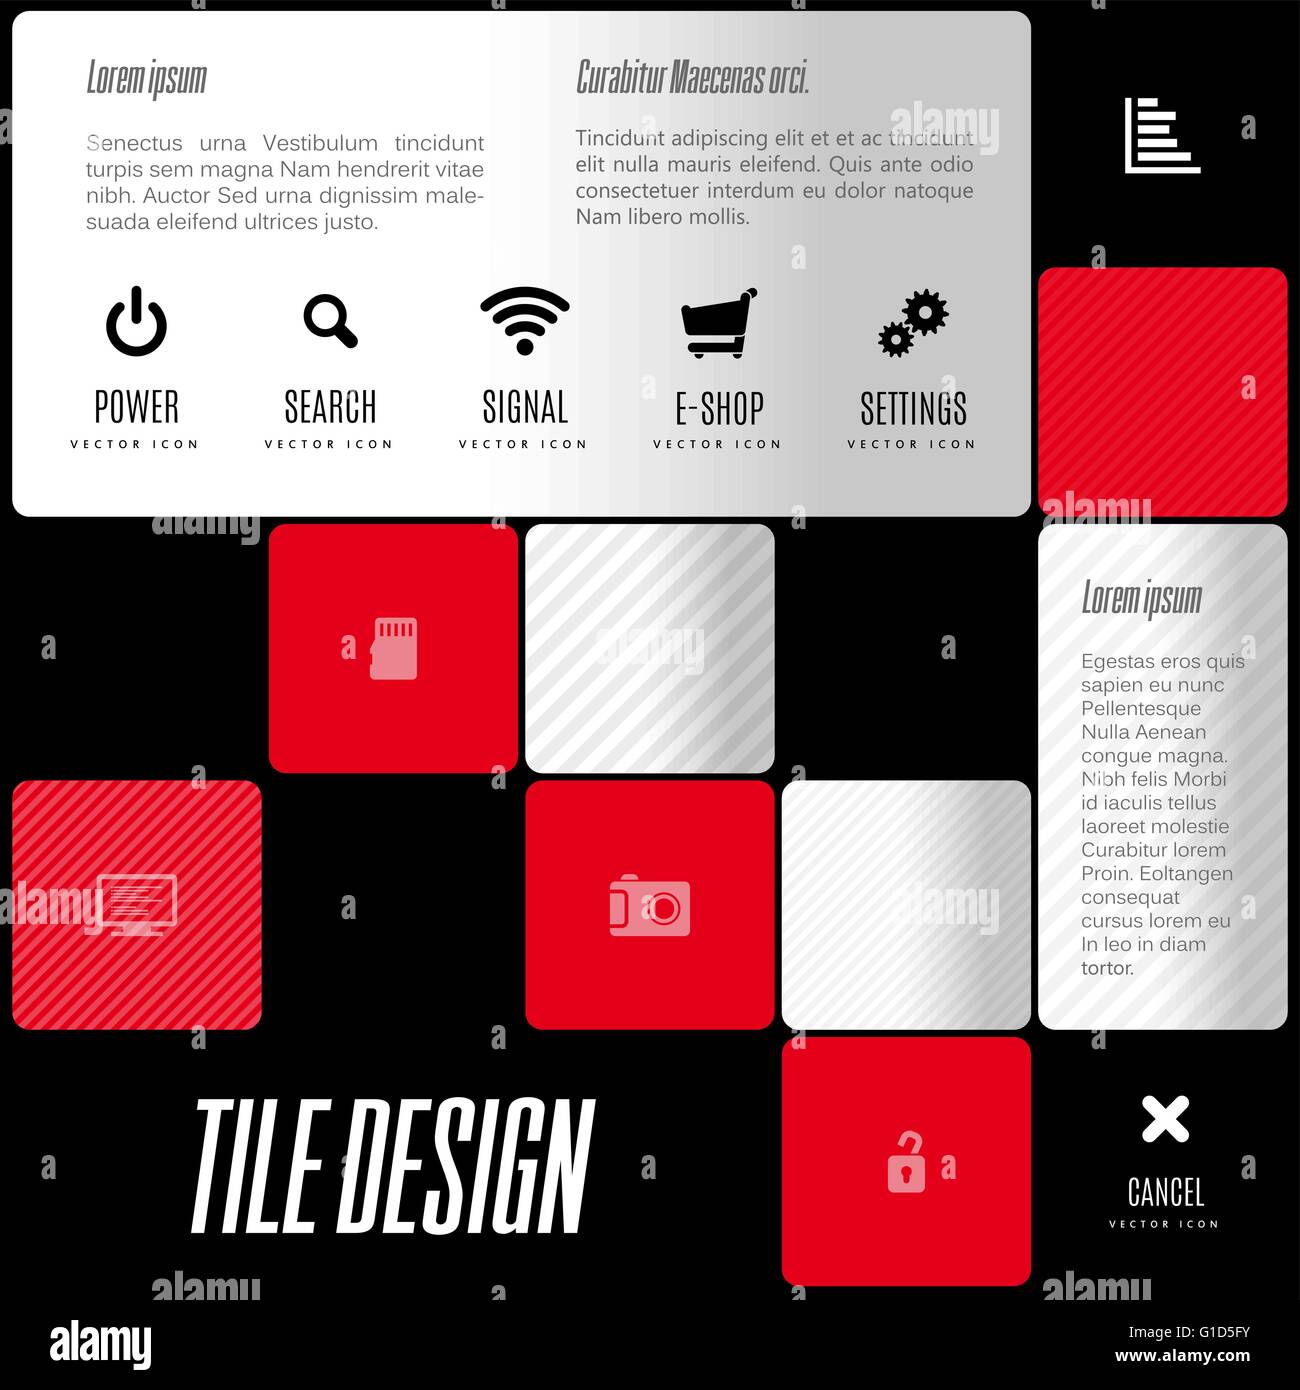 Empresa de diseño de mosaico. elementos de diseño vectorial para folletos, plantillas, infografía. Ilustración del Vector